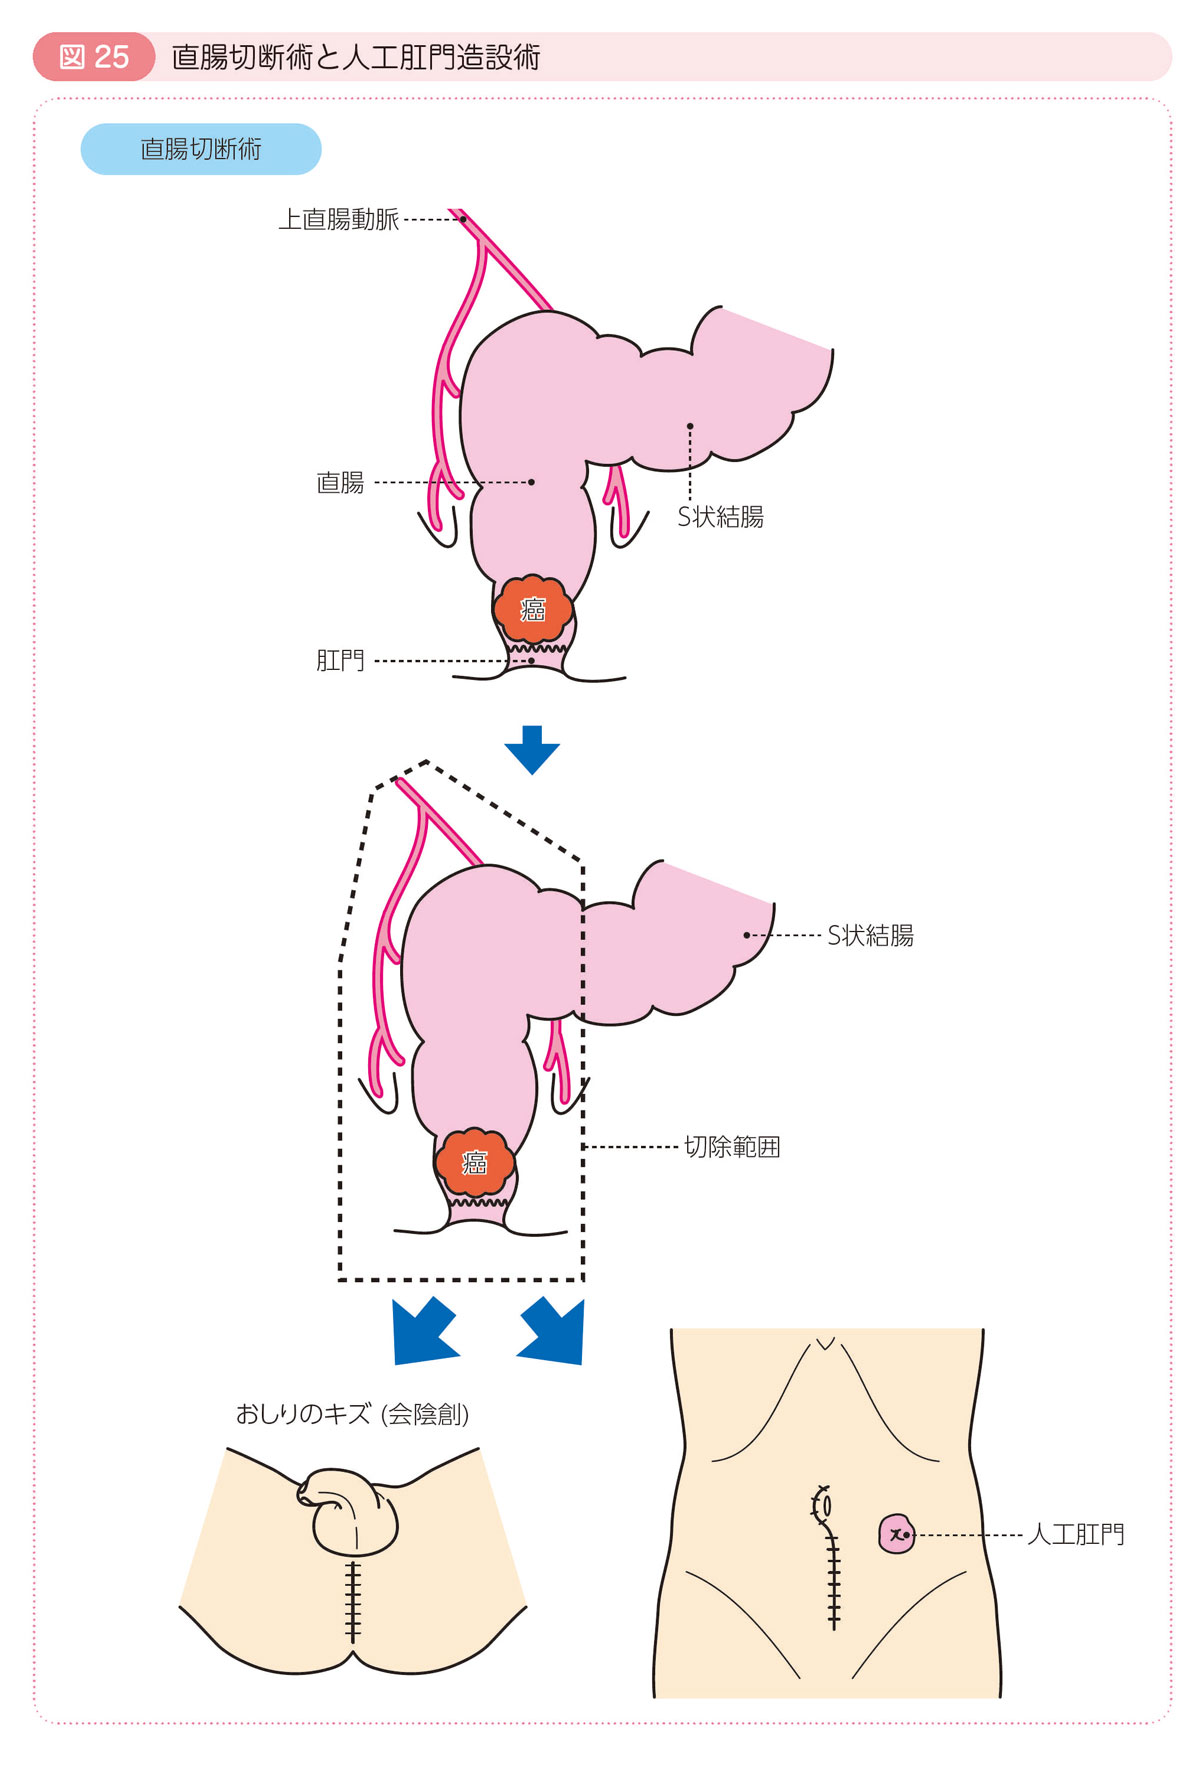 図25 直腸切断術と人工肛門造設術